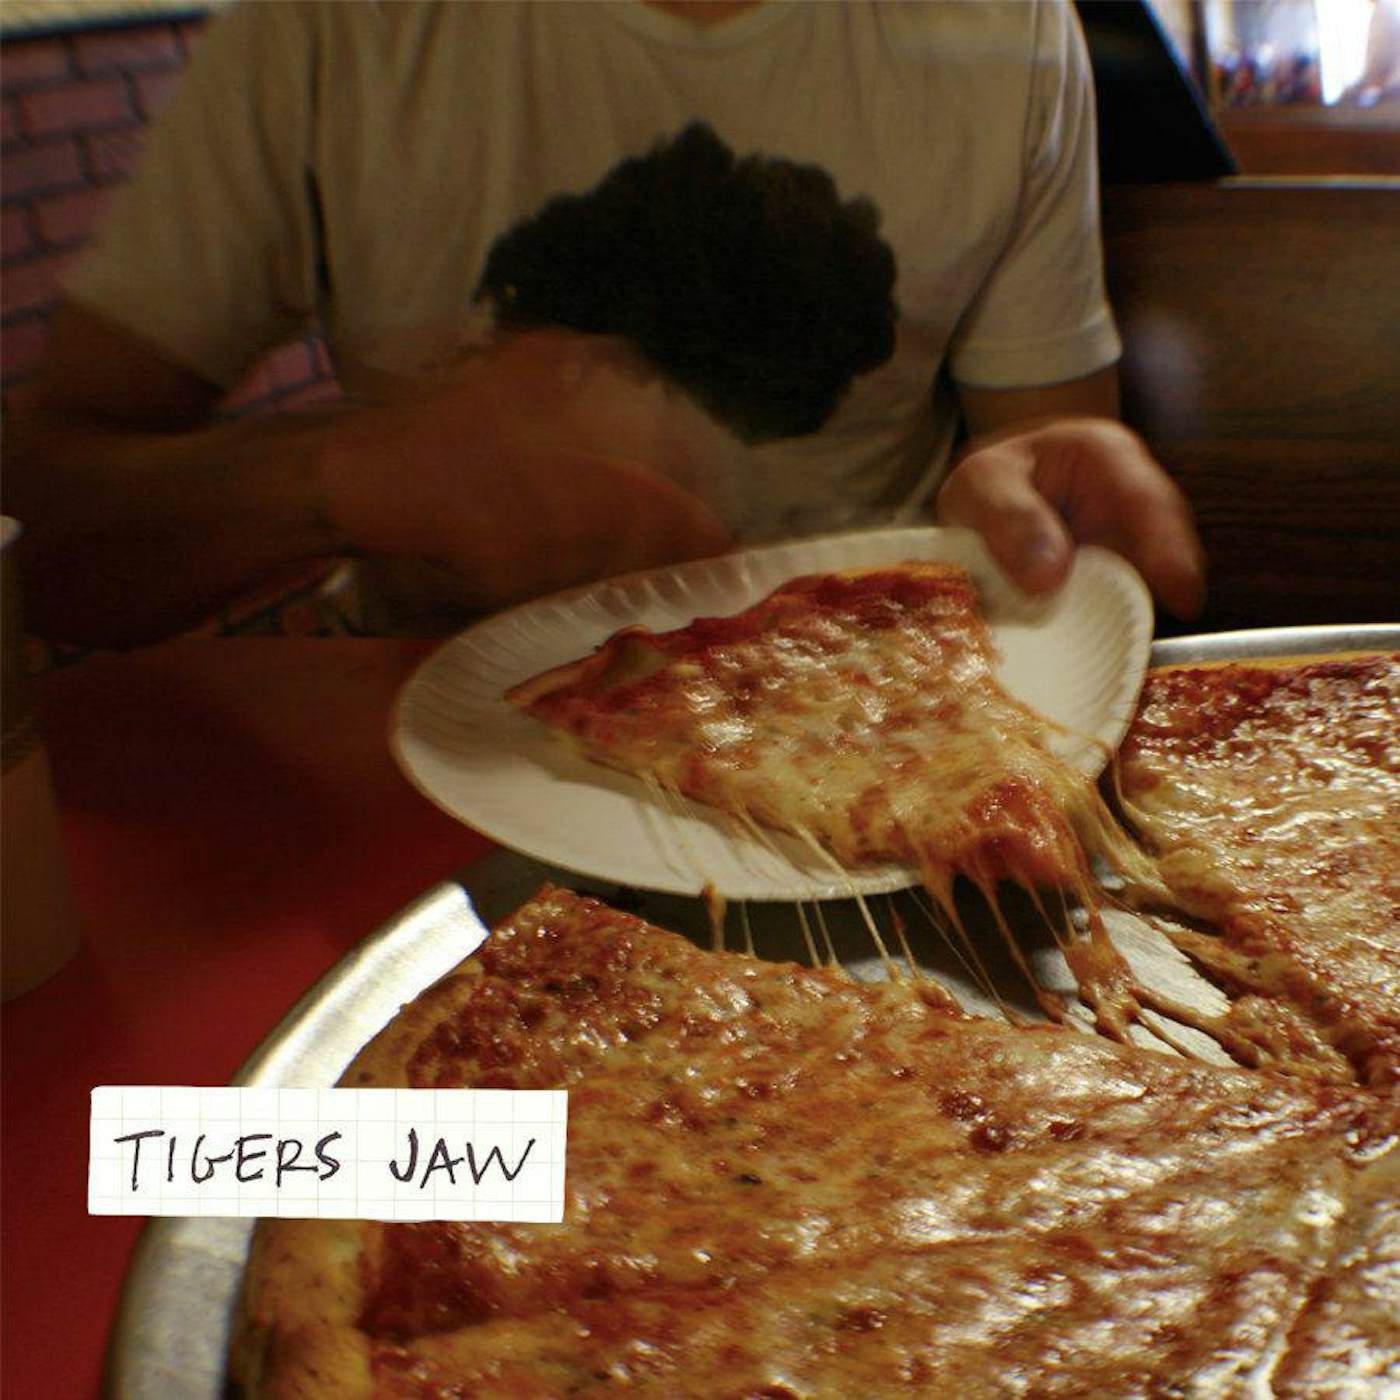  Tigers Jaw S/T Vinyl Record